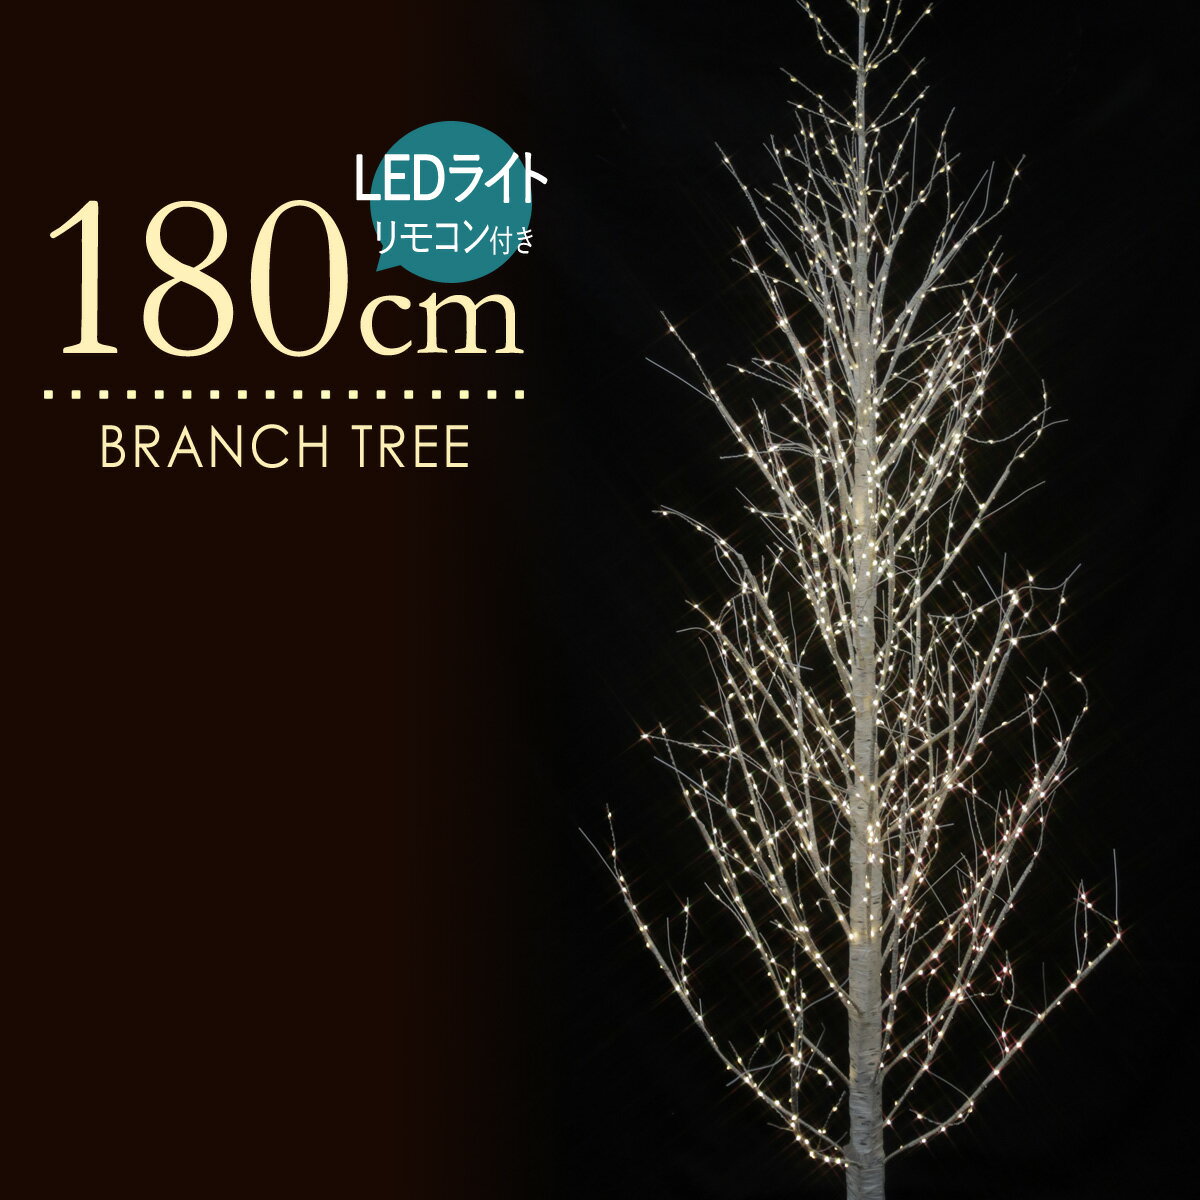 ブランチツリー 180cm ホワイトバーチツリー クリスマスツリー LED ホワイト 白樺 北欧 おしゃれ リモコンで電球色と白色を9パターンで調整が出来ます。タイマー付き